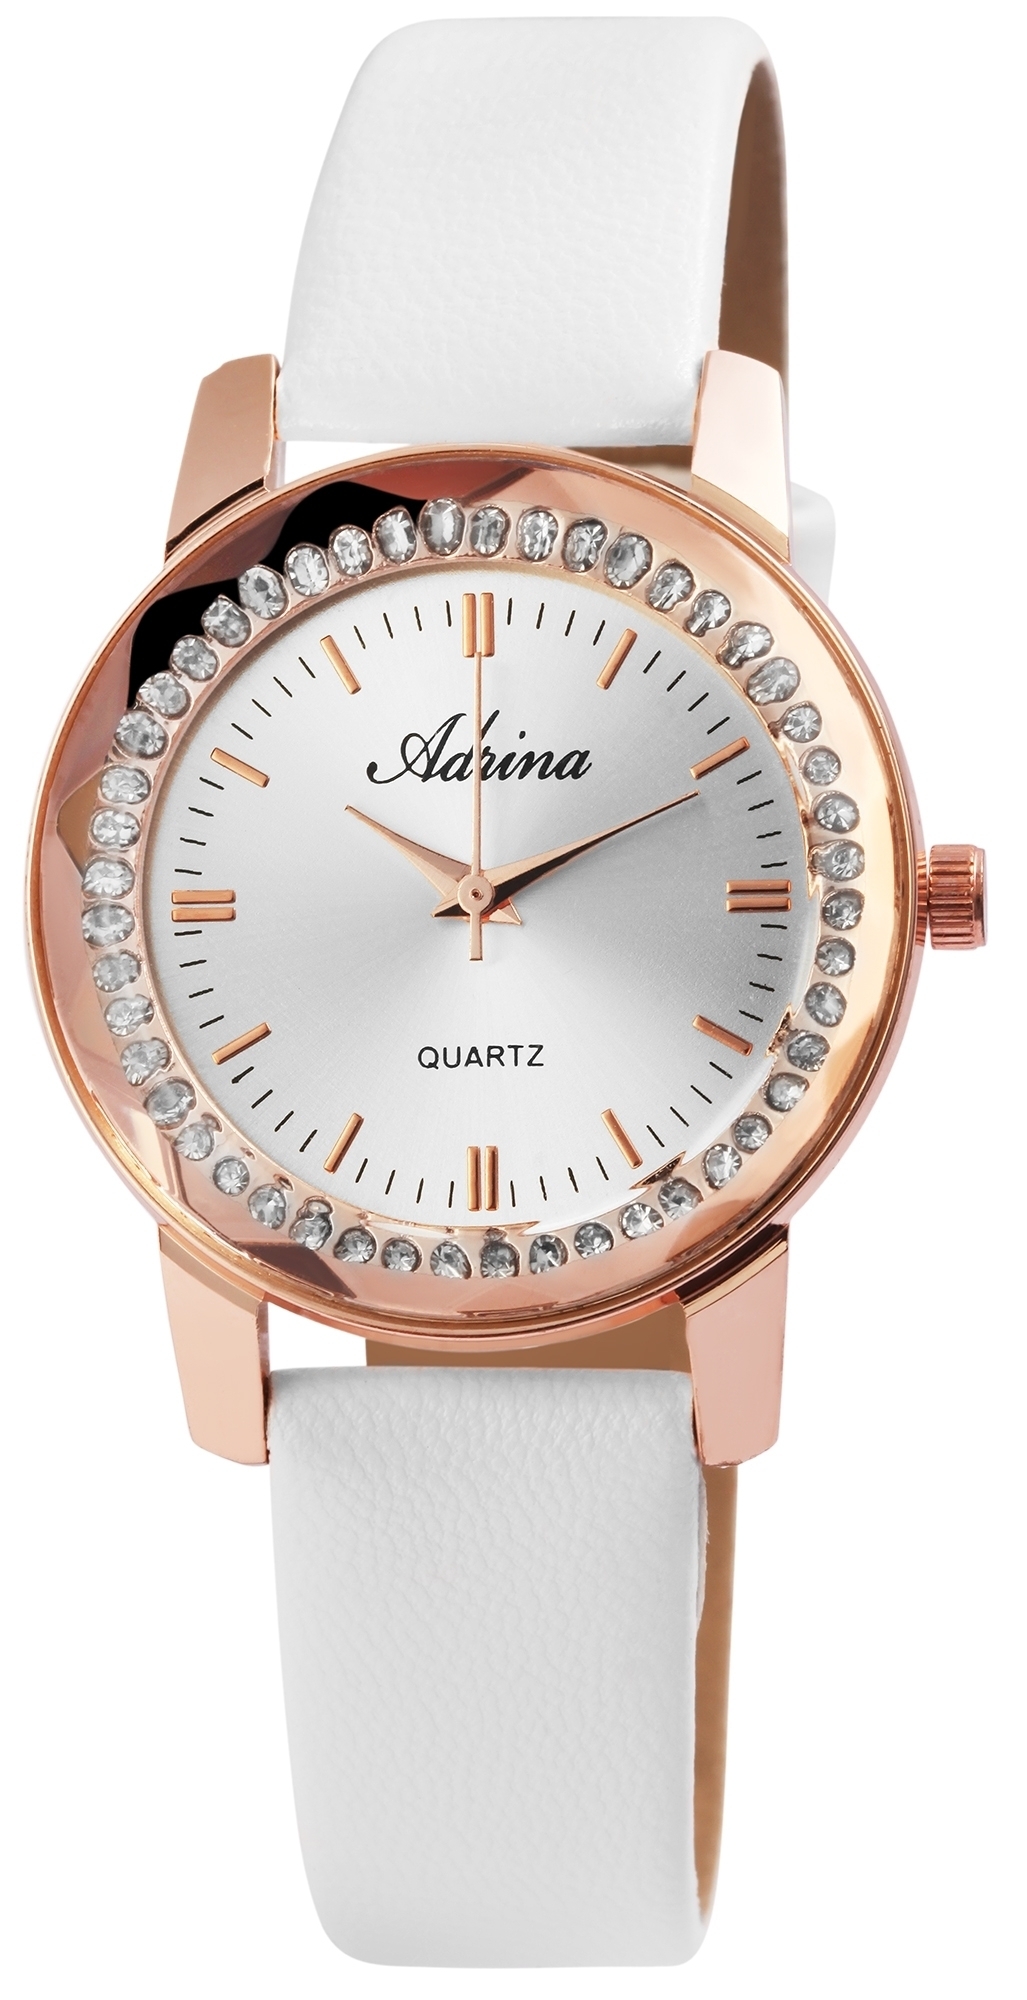 Kaufe Neue Design Frauen Uhren Magnet Schnalle Strass Luxus Damen Uhr Quarz  Relogio Feminino Armbanduhr montre femme stunde uhr